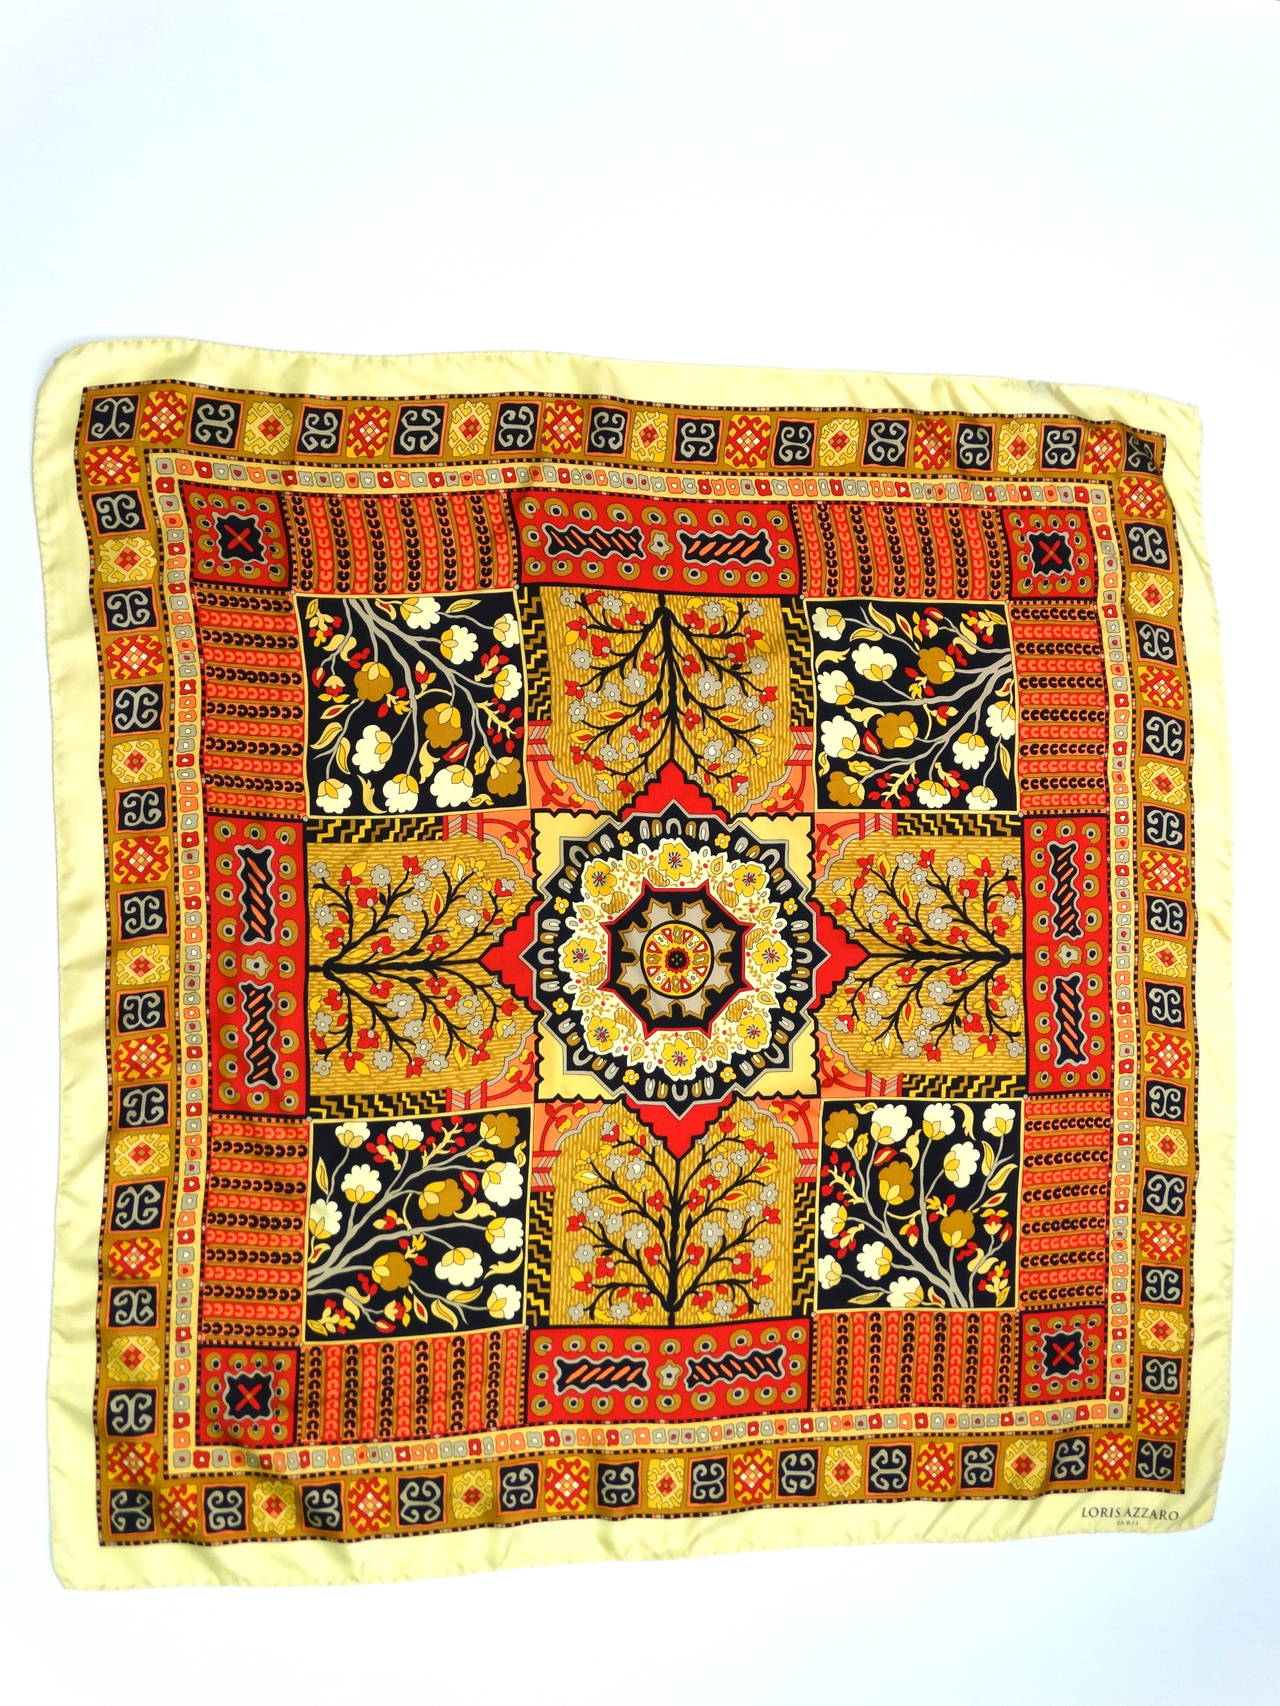 Magnifique et rare foulard en soie Loris Azzaro des années 70, aux riches couleurs or, corail, noir, rouge et marron. Cette écharpe a un imprimé qui me rappelle un
 